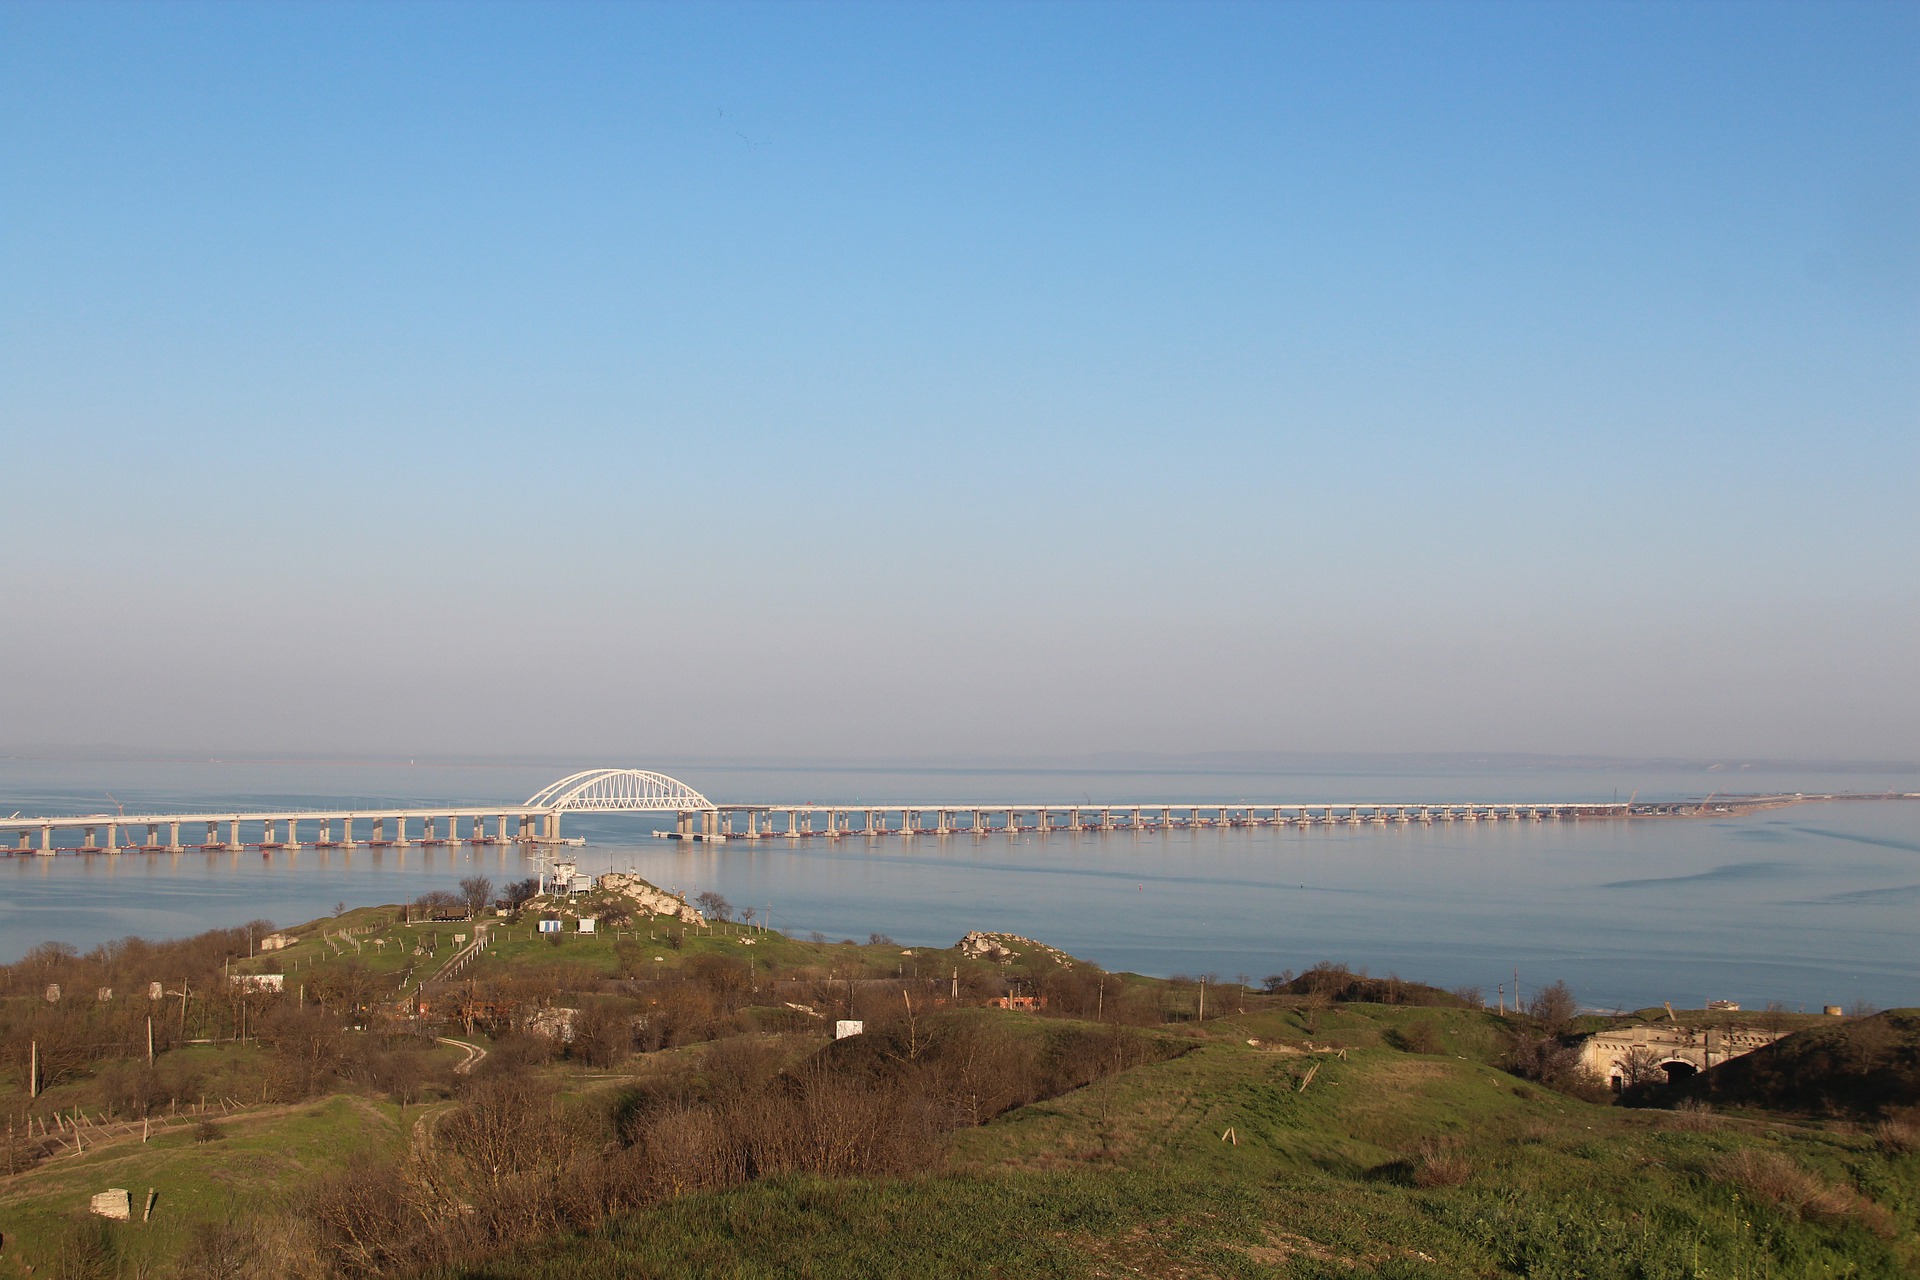 Аксенов пообещал устранить пробки на въезде на Крымский мост к началу курортного сезона